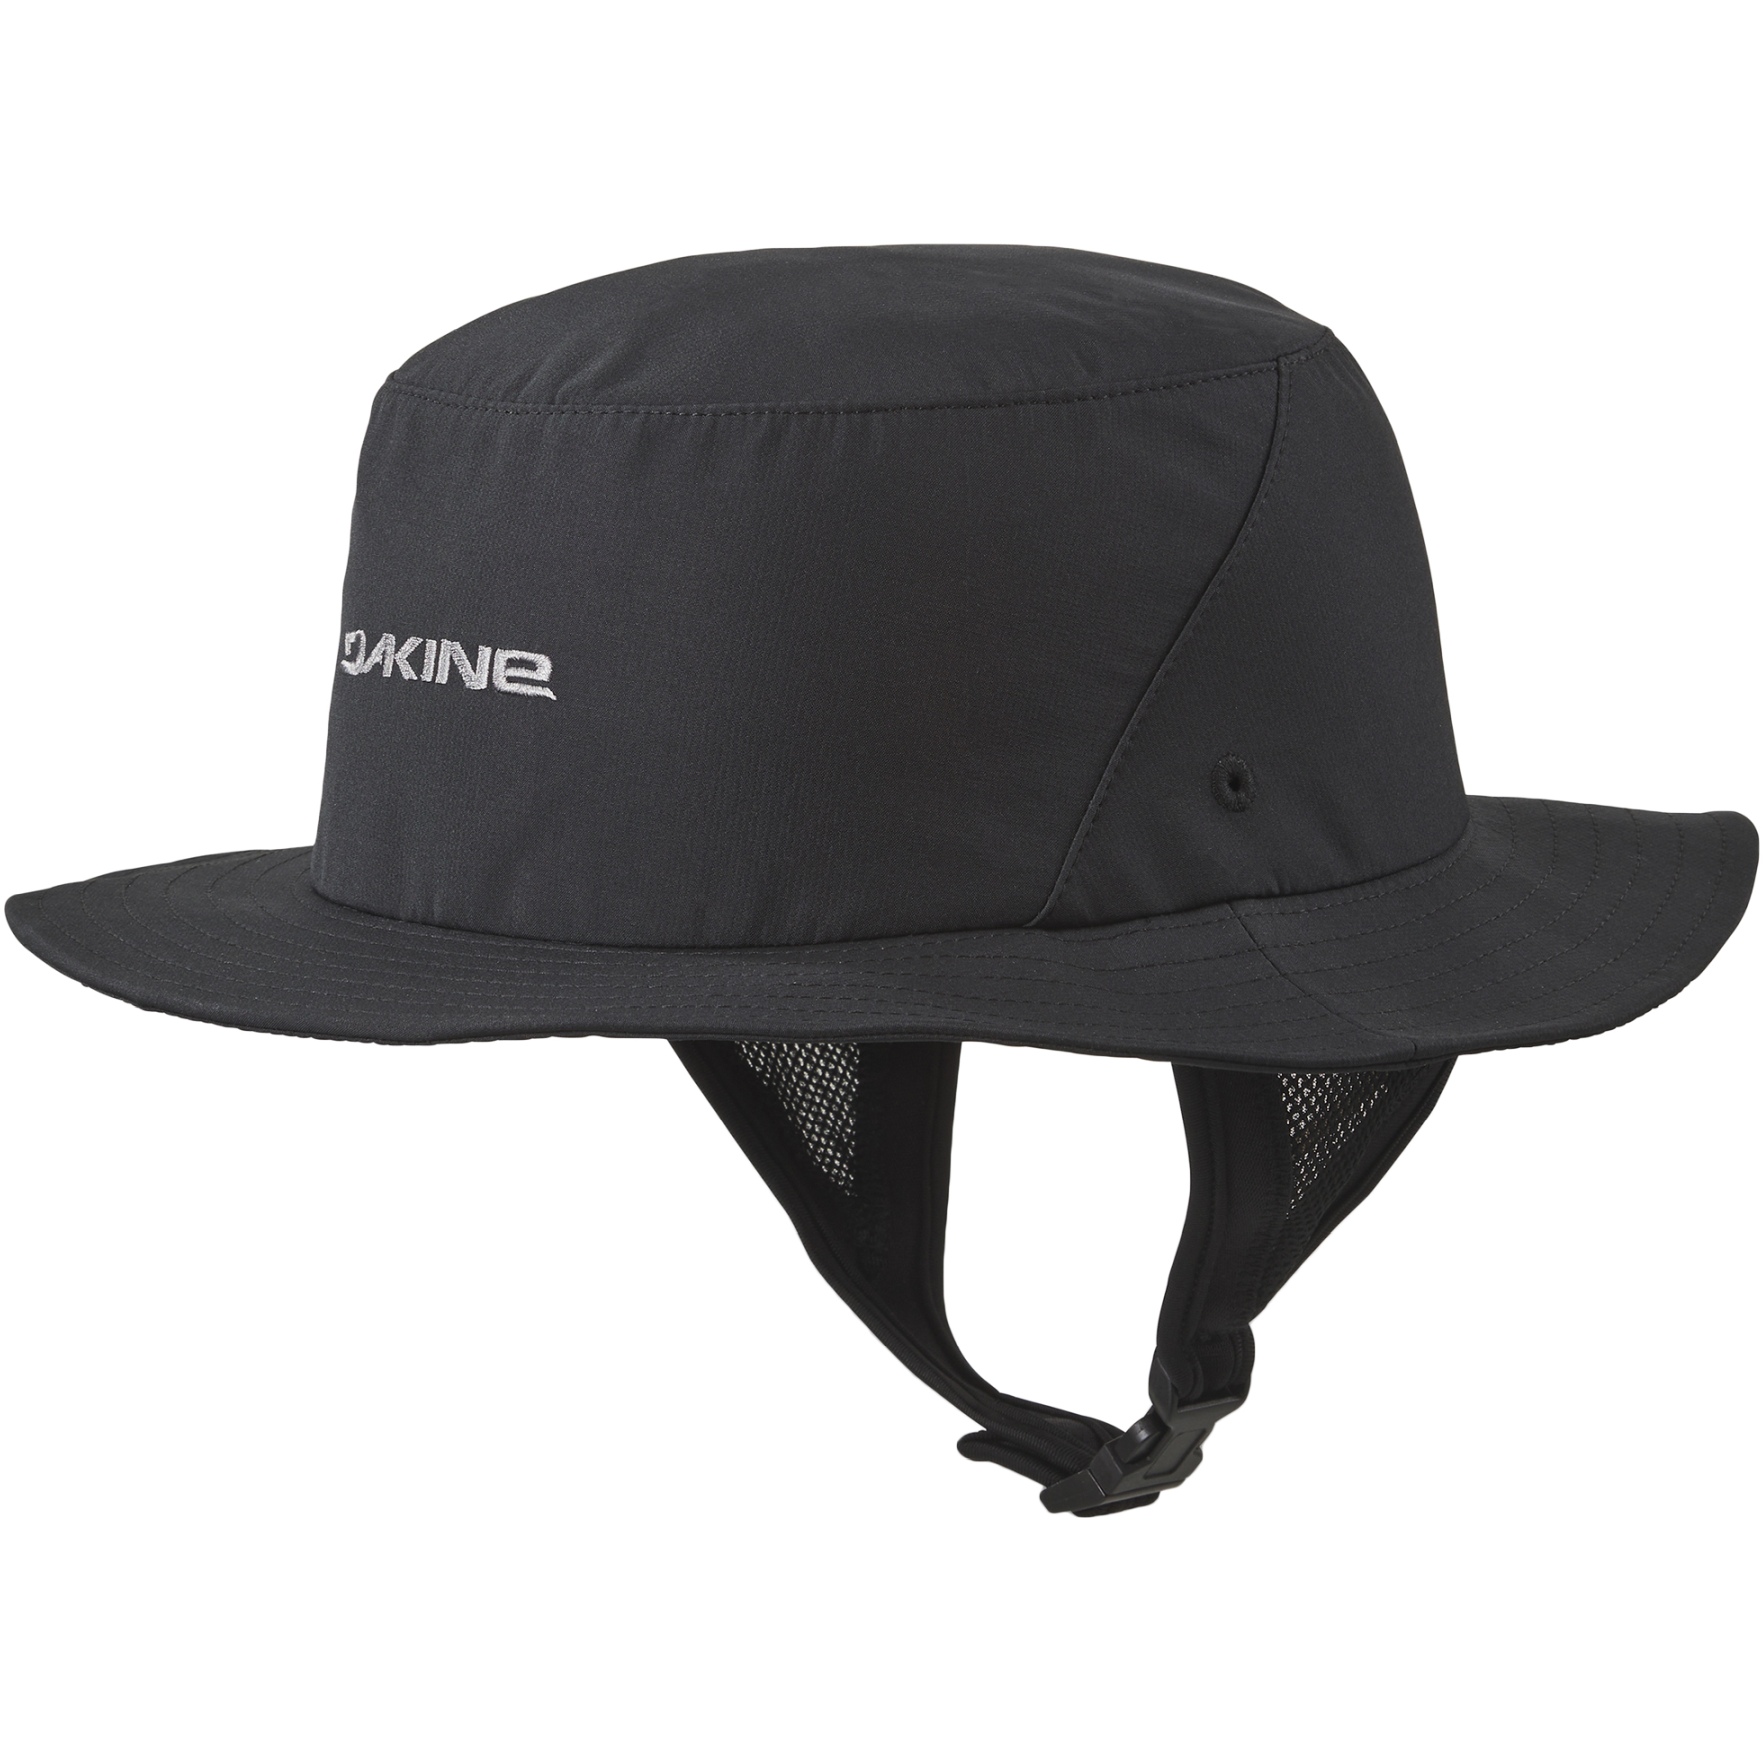 Produktbild von Dakine Indo Surf Hut - schwarz